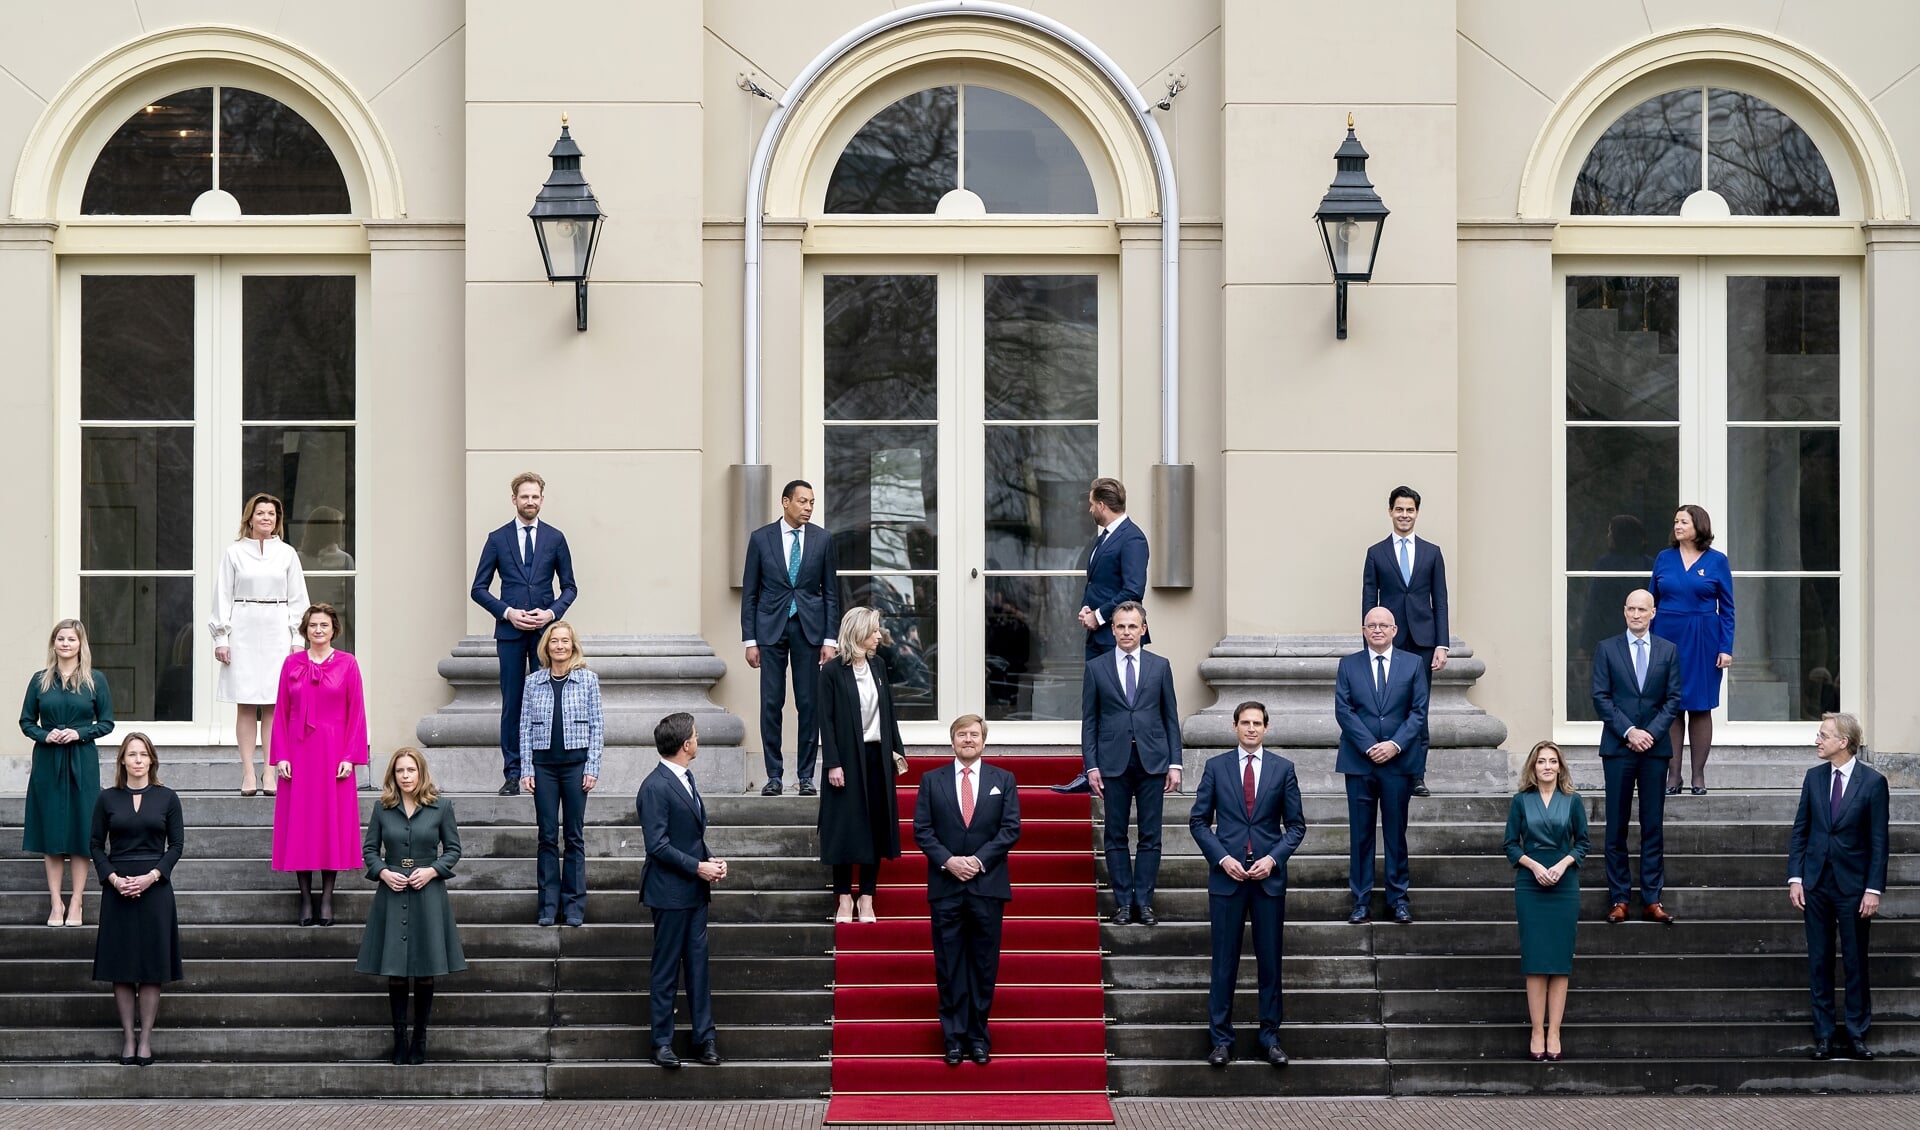 De nieuwe ministersploeg presenteerde zich maandag na de beëdiging met koning Willem-Alexander op het bordes van Paleis Noordeinde.